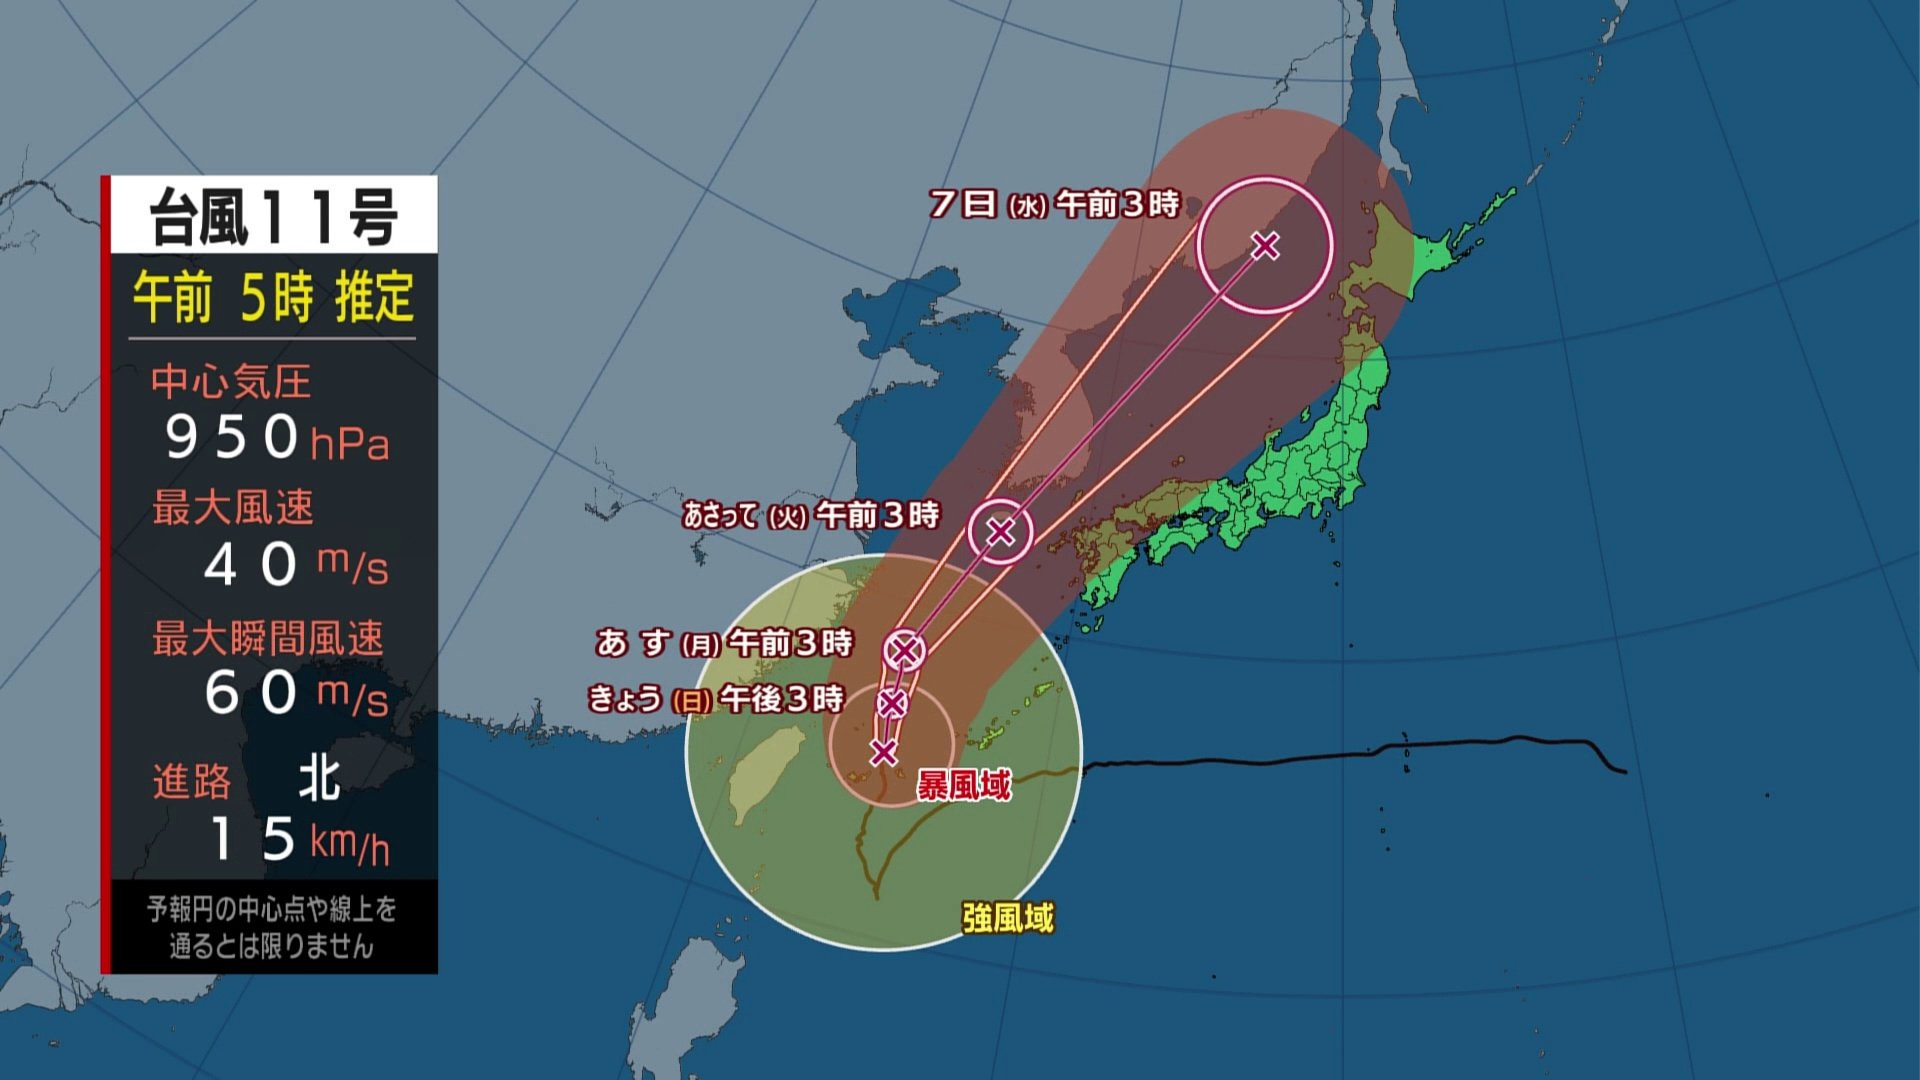 ＂とにかく動きが遅い＂台風11号　強風域大きく影響長引く恐れも　気象予報士解説